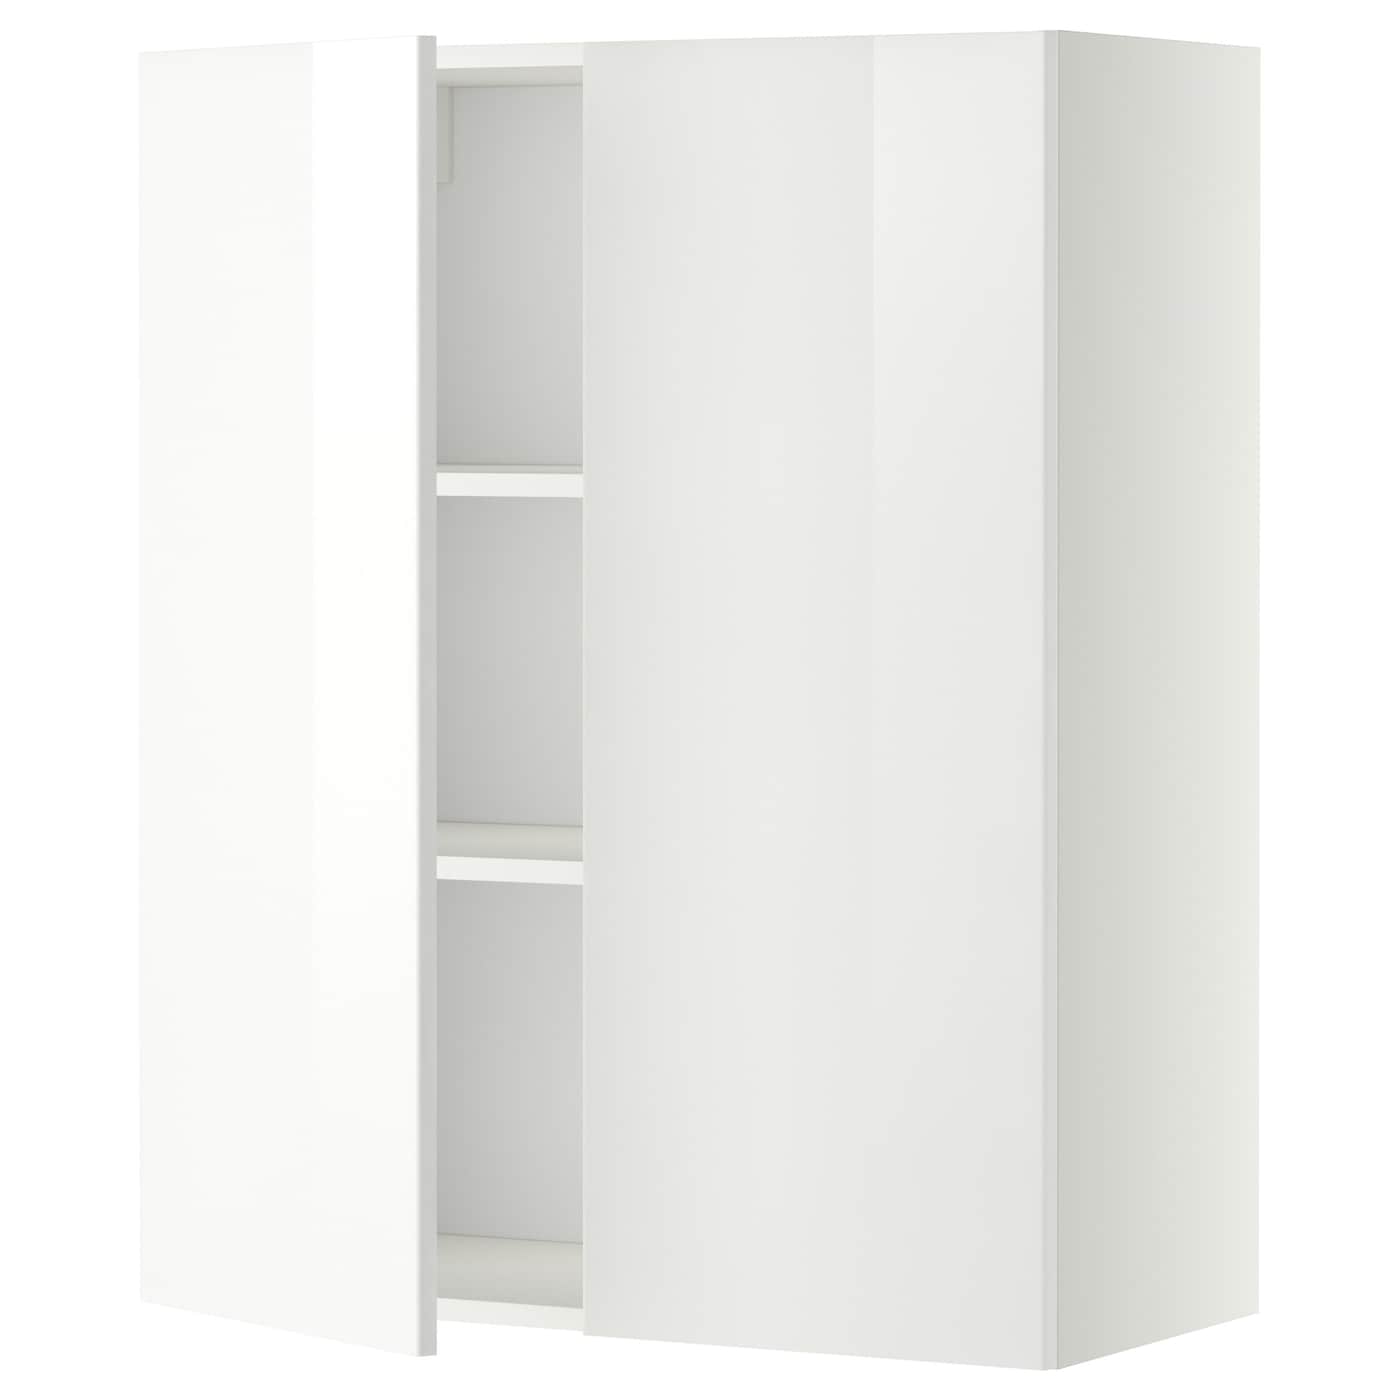 Навесной шкаф с полкой - METOD IKEA/ МЕТОД ИКЕА, 100х80 см,  белый